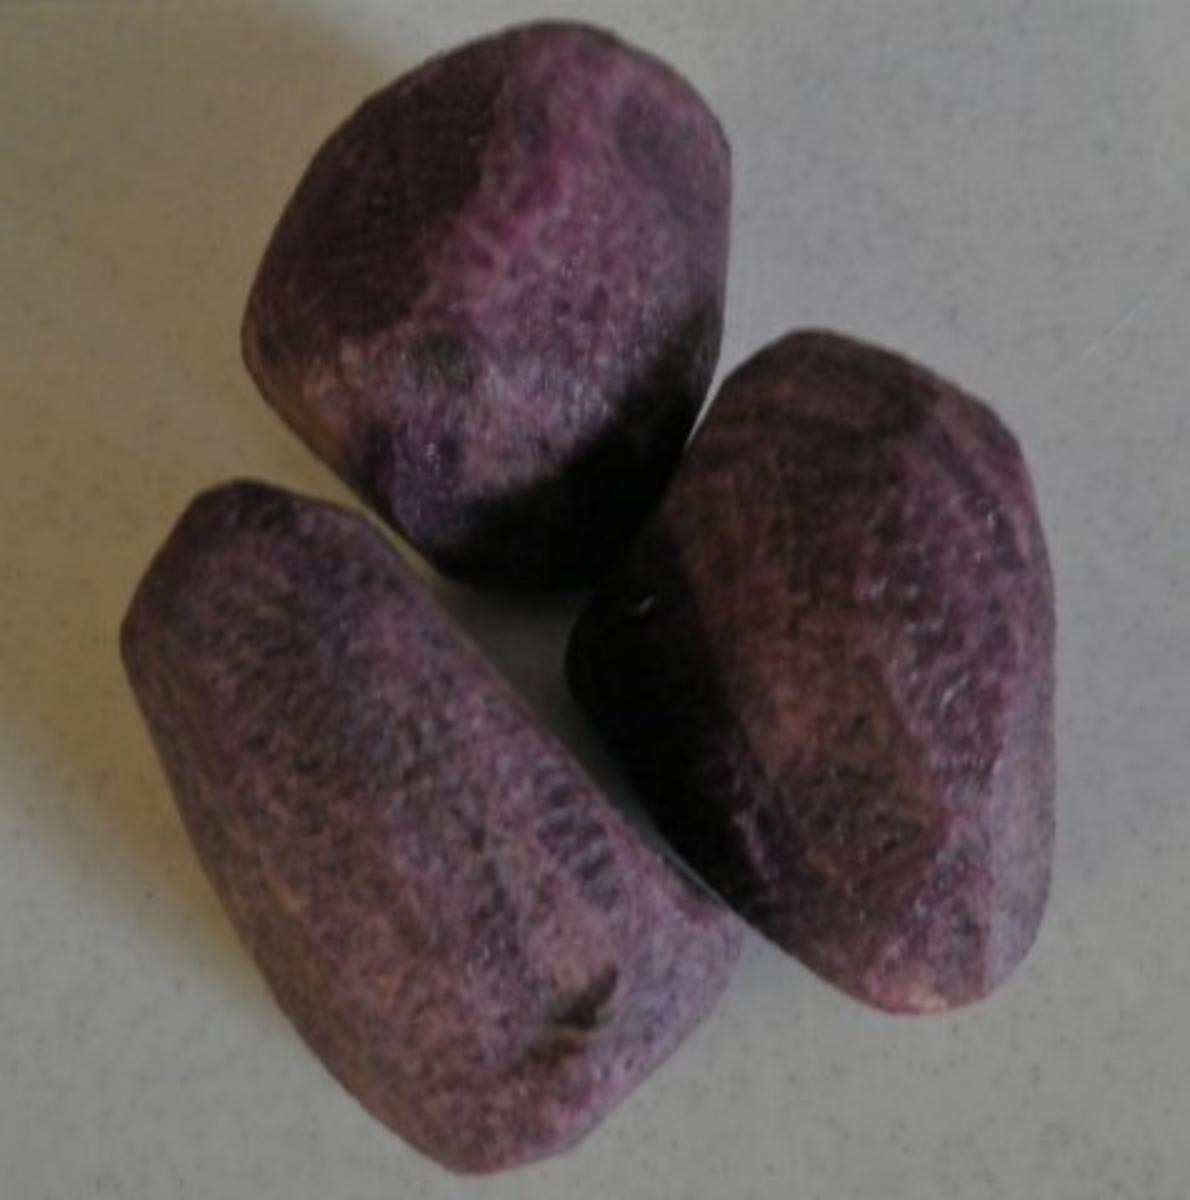 Zugedeckter Fisch mit violetten Kartoffelpüree - Rezept - Bild Nr. 7